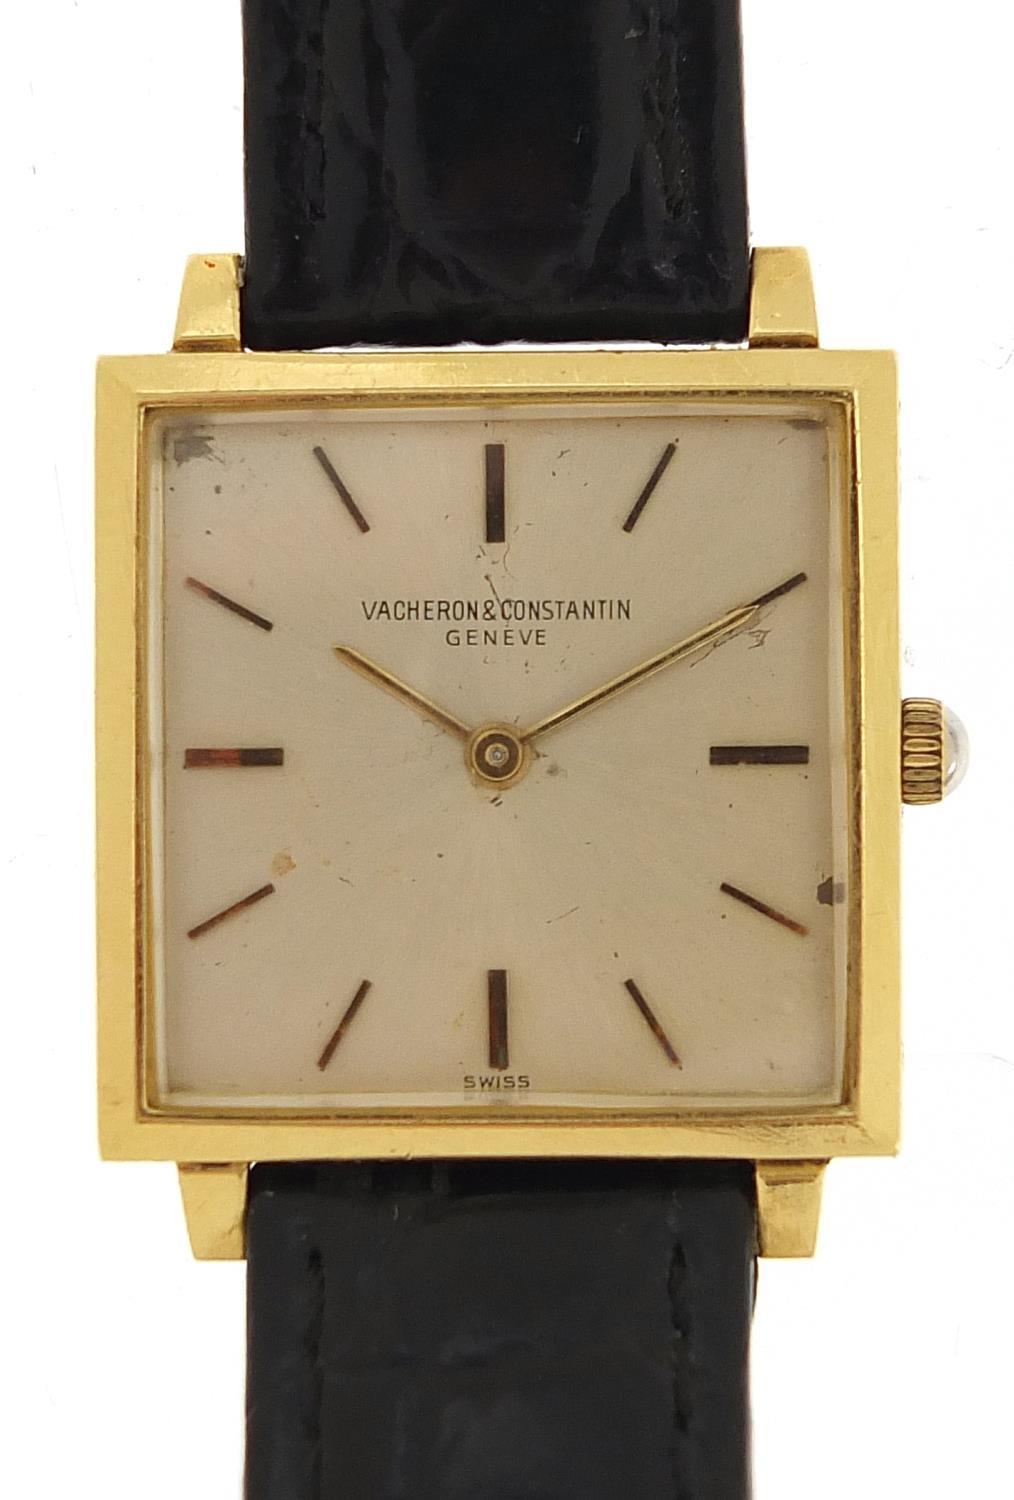 Vacheron & Constantin, 18ct gold gentlemen's wristwatch, the movement numbered 1003, 25mm wide,